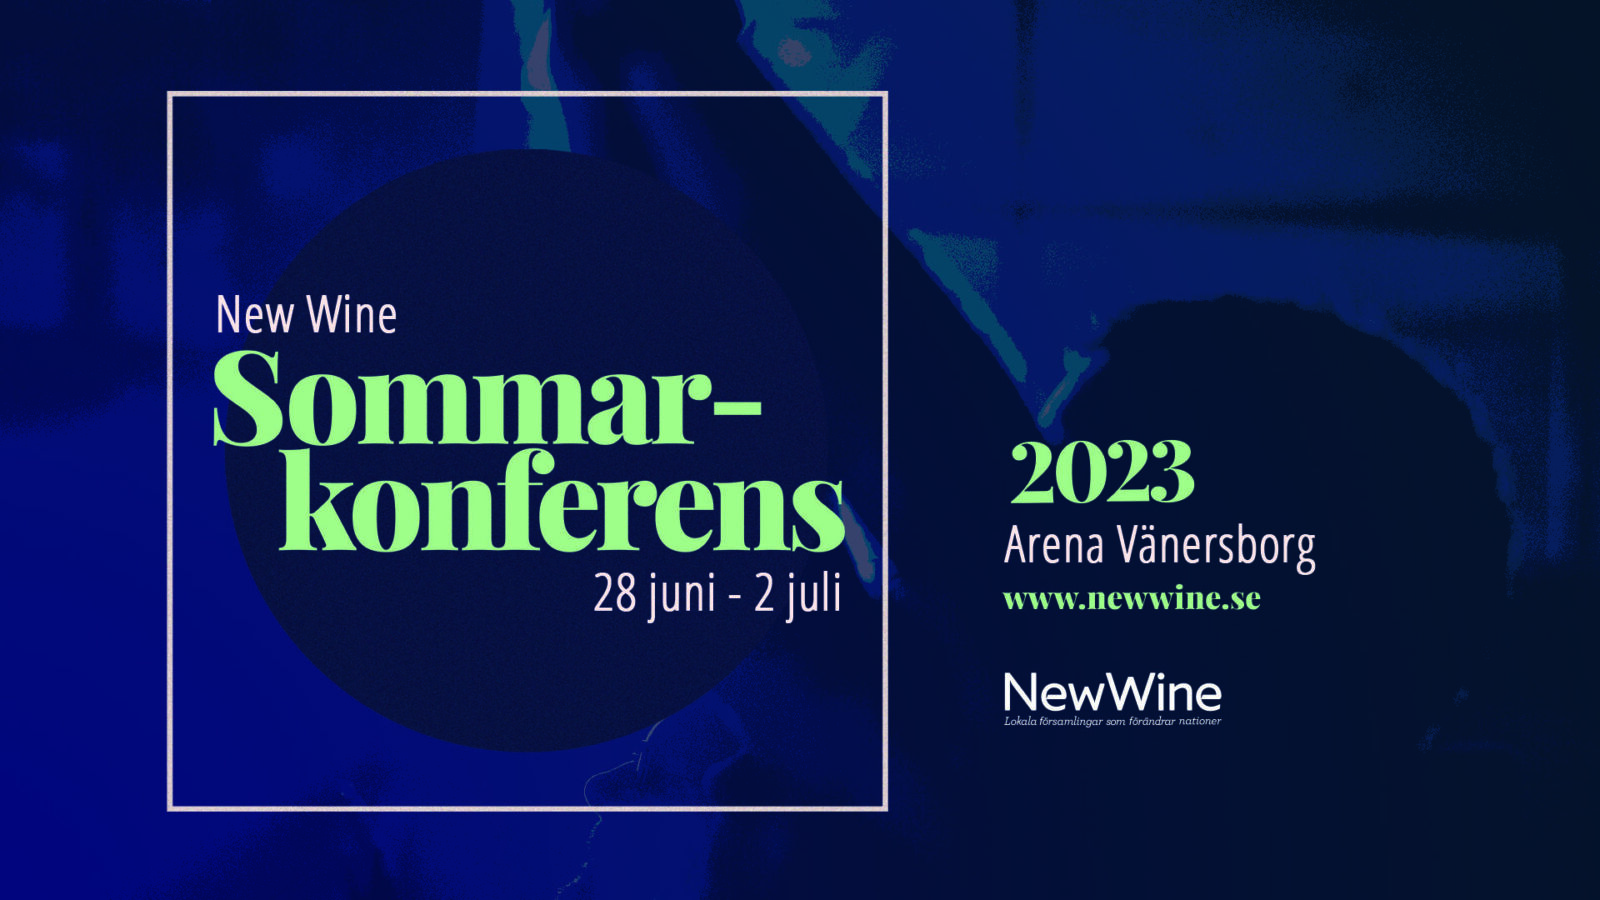 New Wine sommarkonferens 2023 - StorbildRityta 1